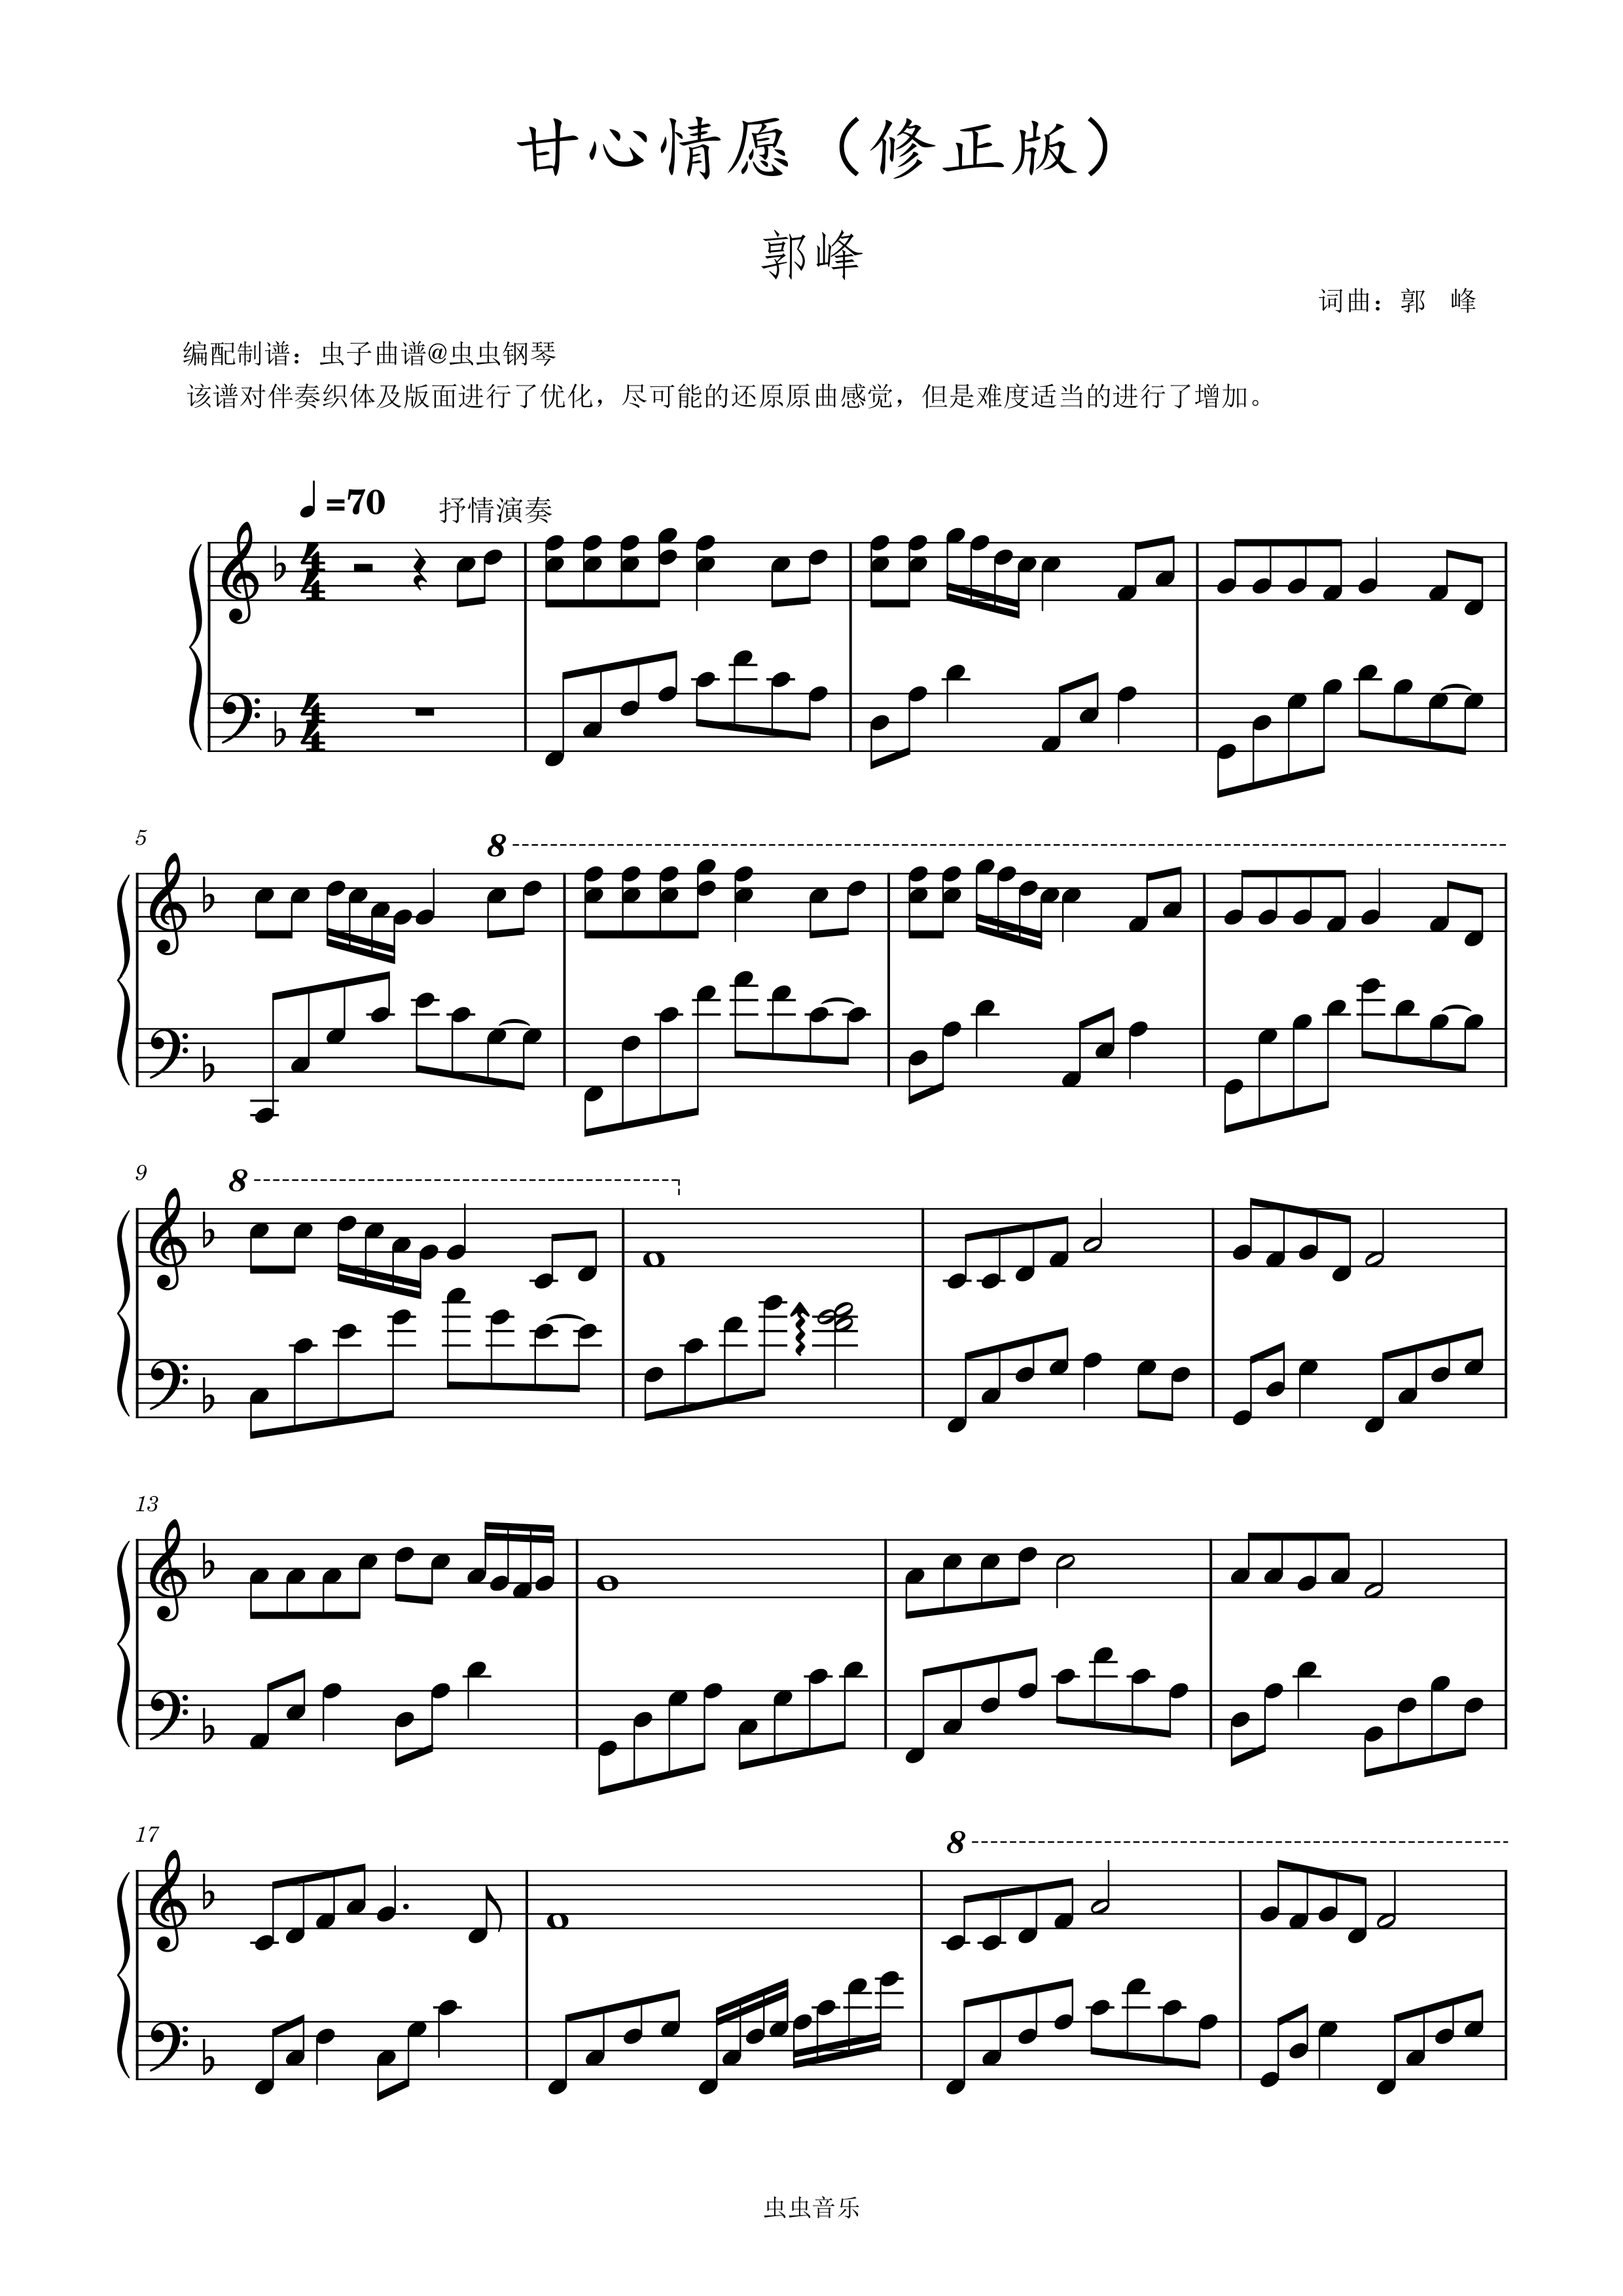 甘心情愿-郭峰-EOP教学曲五线谱预览1-钢琴谱文件（五线谱、双手简谱、数字谱、Midi、PDF）免费下载